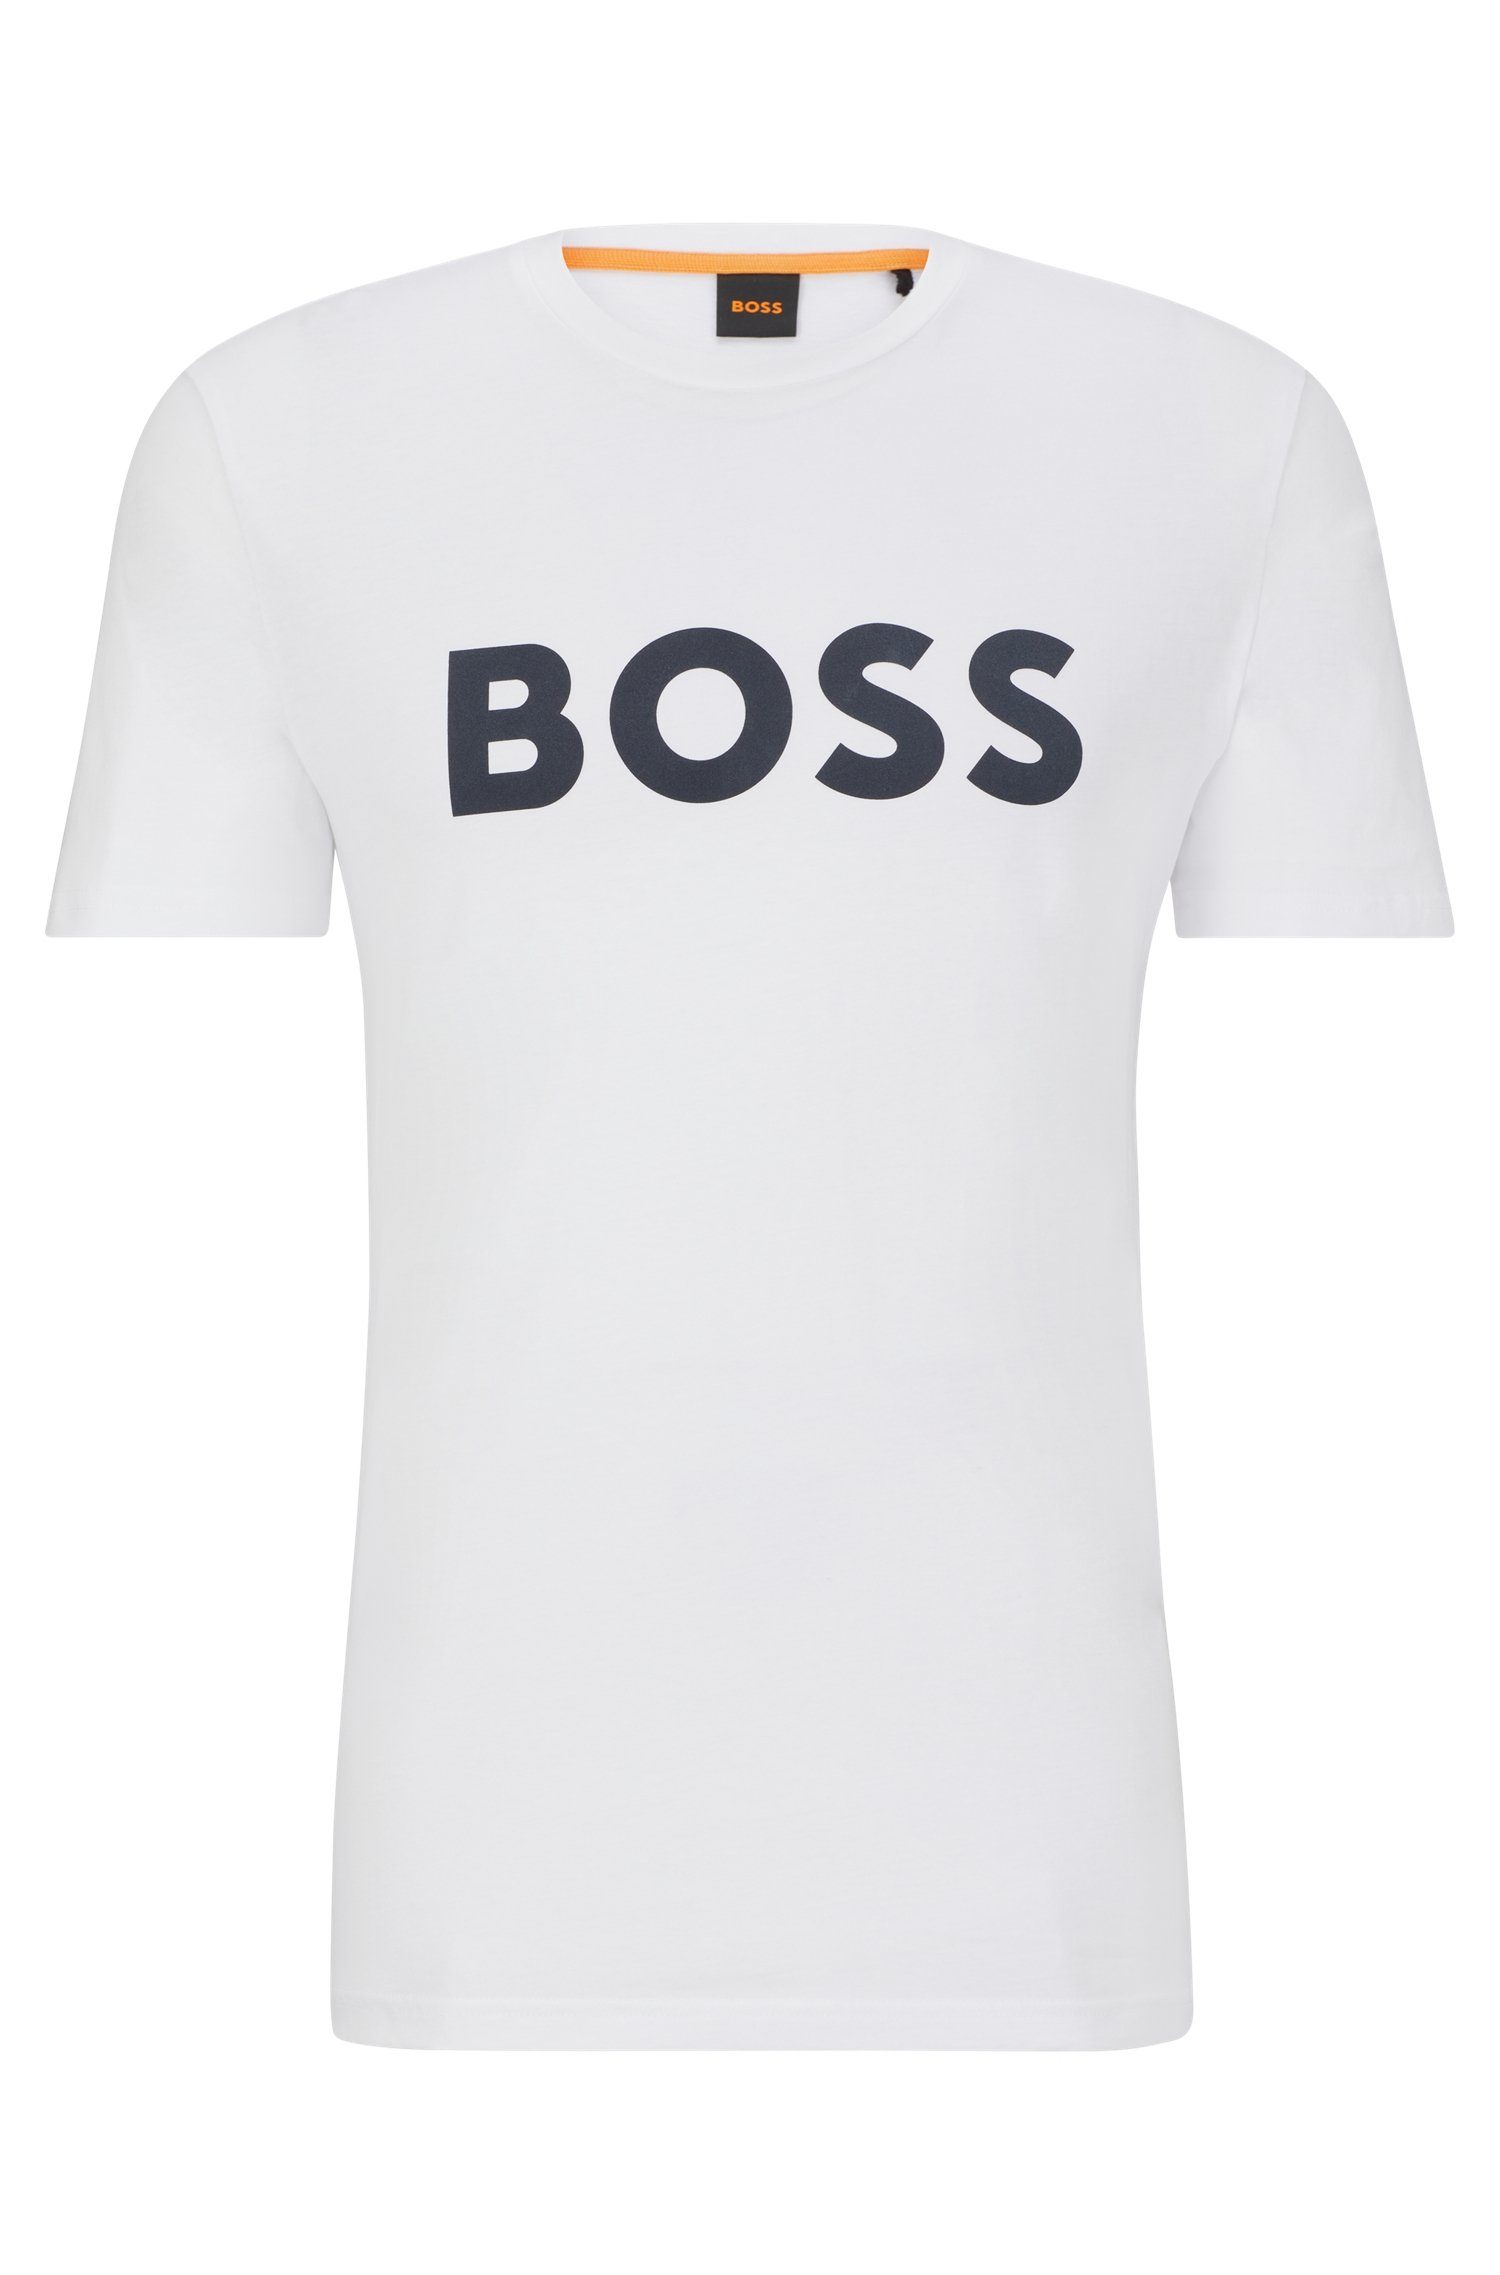 BOSS ORANGE T-Shirt Thinking 1 10246016 01 mit großem BOSS Druck auf der Brust White100